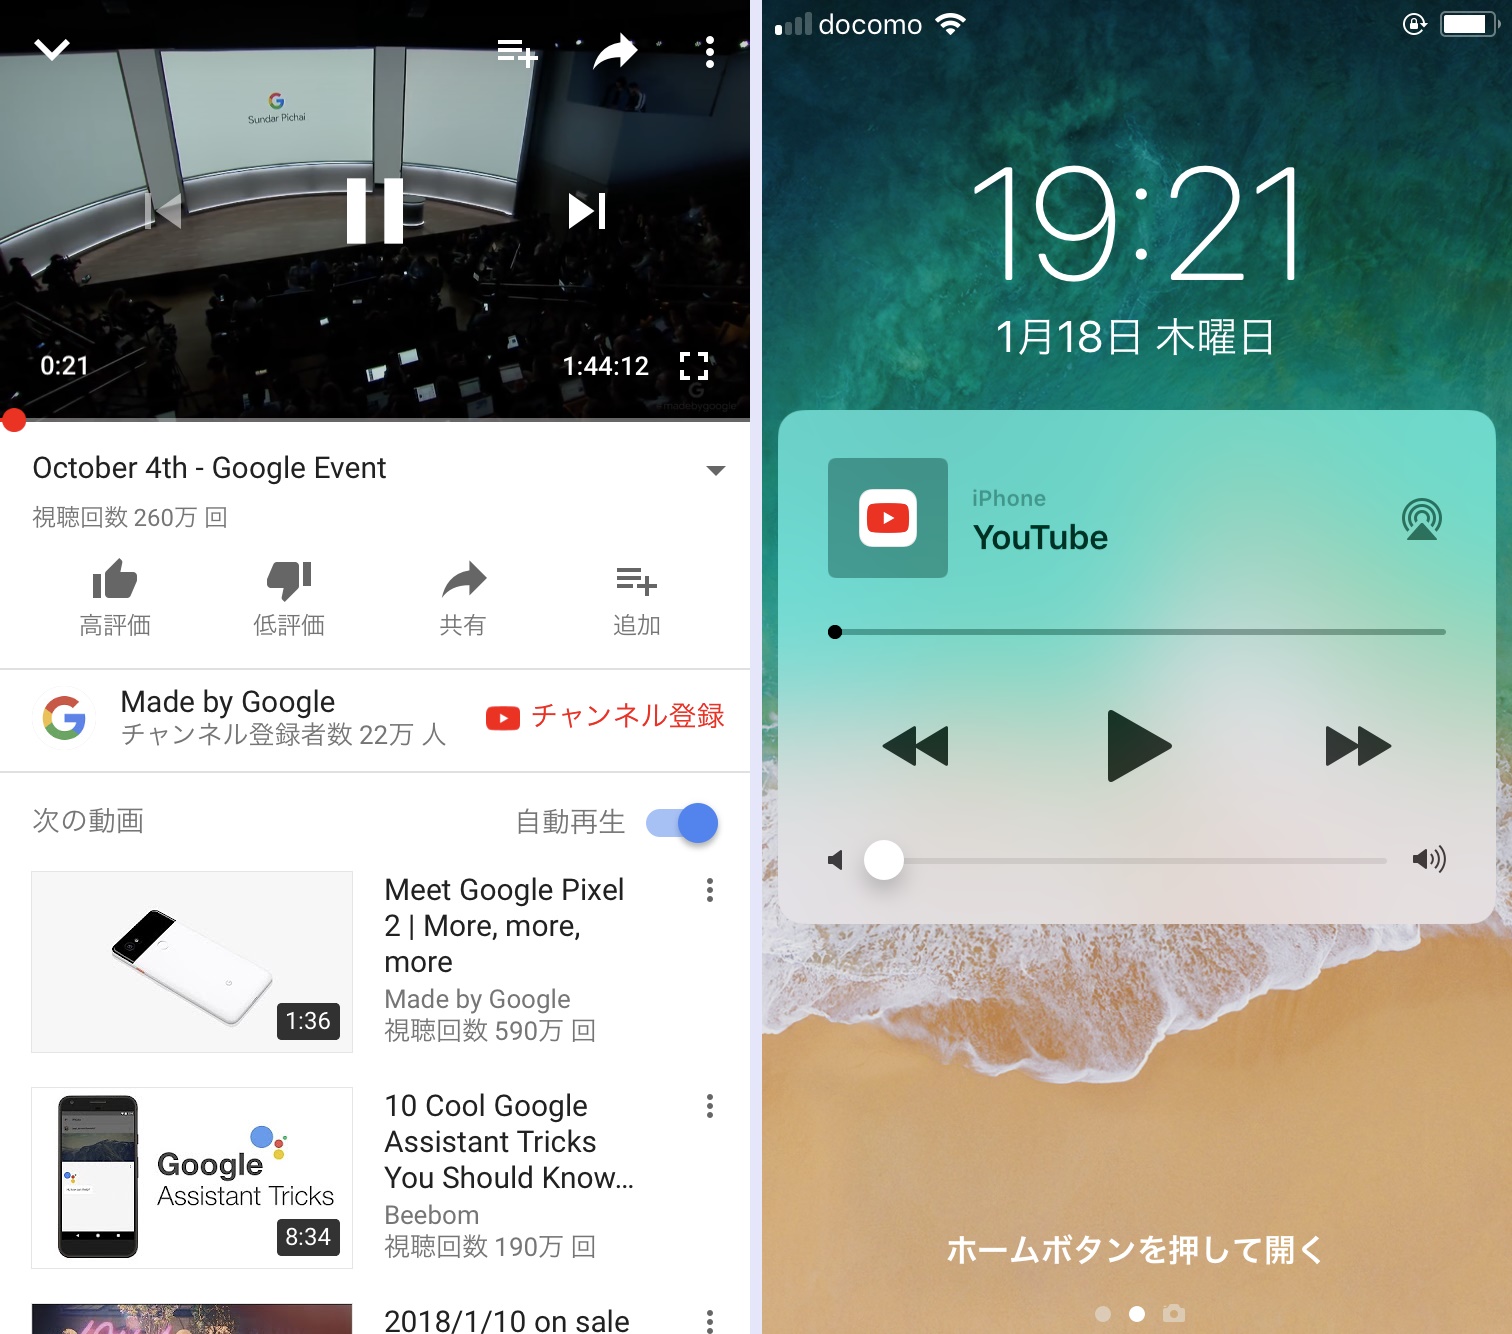 これで寝落ちしても安心 時間になると動画の再生を自動的にオフにする Iphone Tips Engadget 日本版